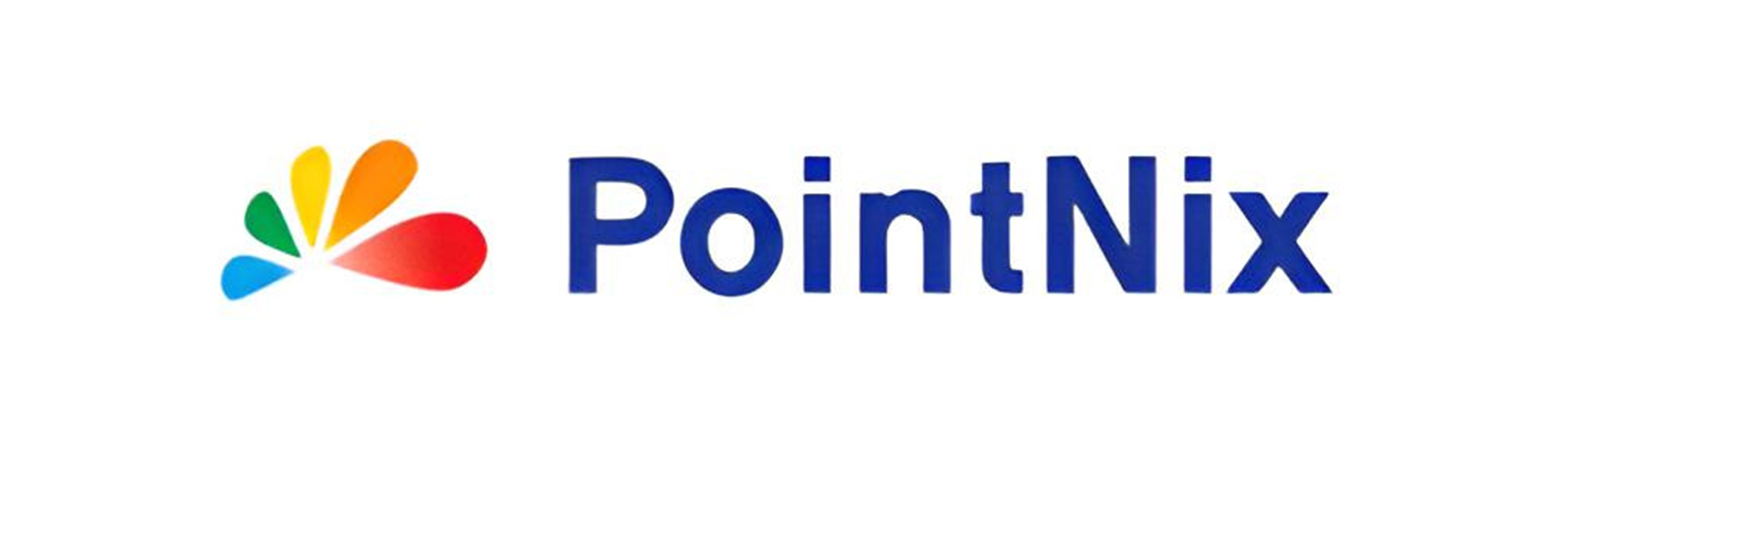 Pointnix